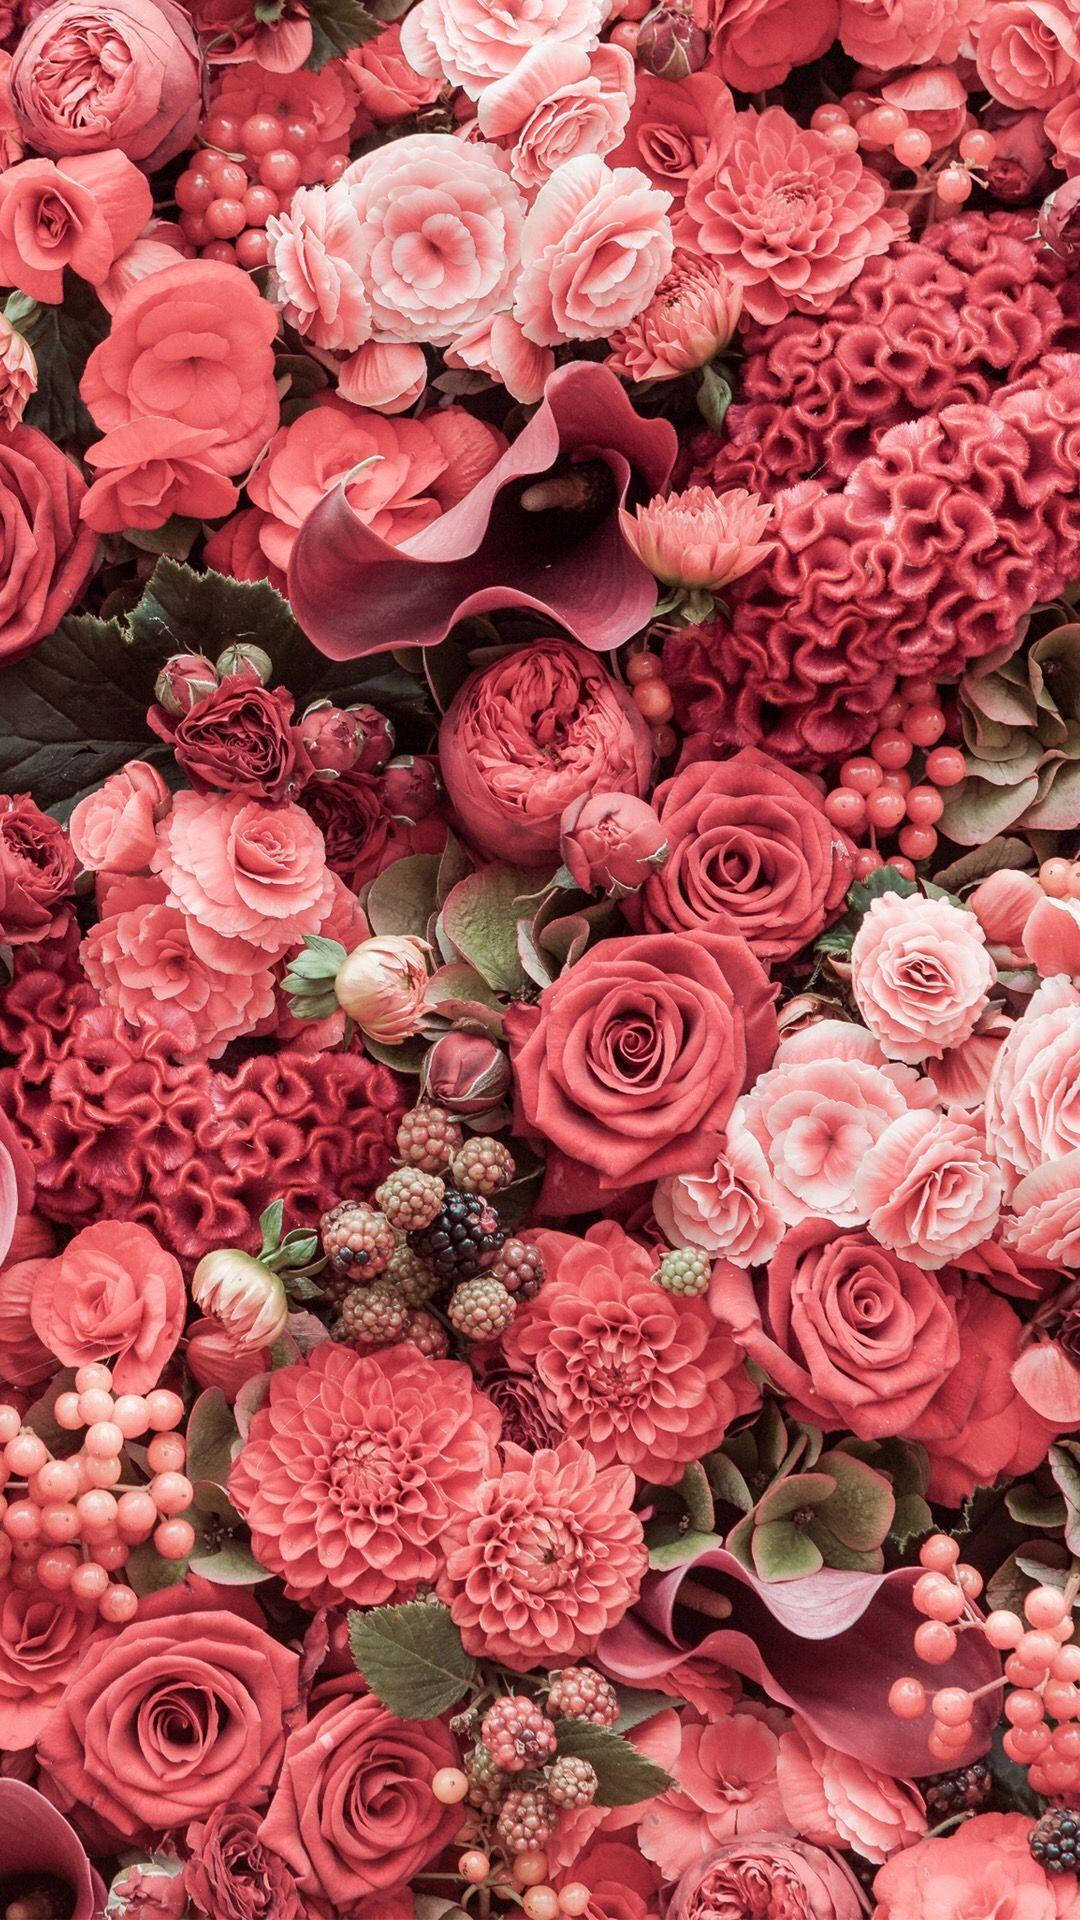 Tải xuống hình nền iPhone hoa hồng hồng là cách tuyệt vời để thể hiện cá tính và phong cách riêng của bạn. Hãy xem hình ảnh liên quan để tìm hiểu thêm về những gợi ý hoa hồng hồng tuyệt đẹp nhất.